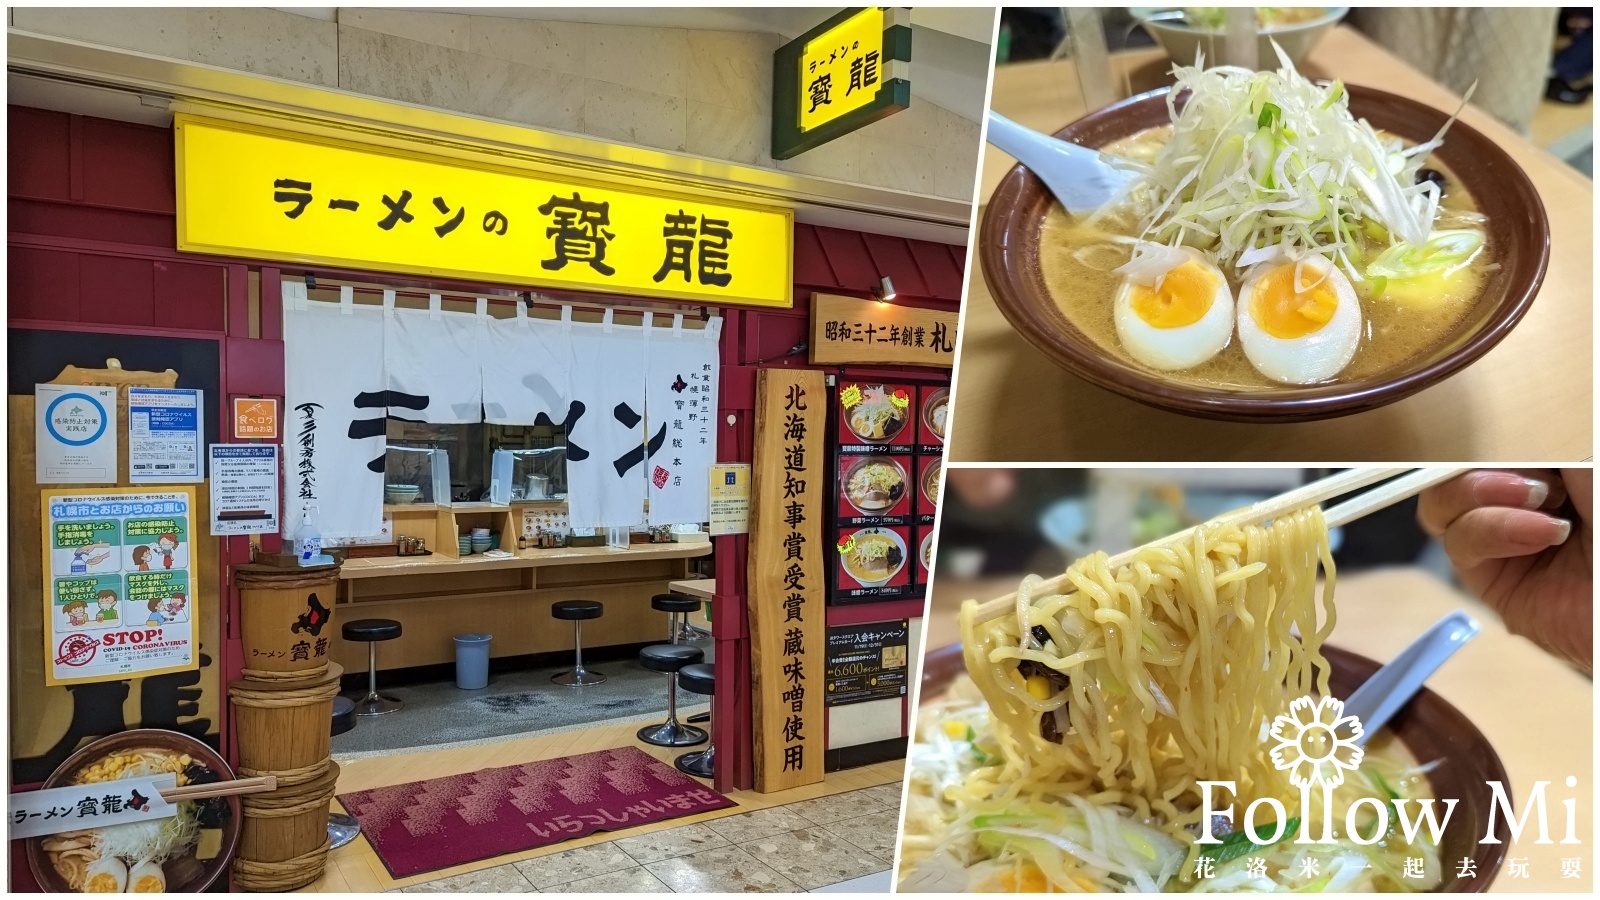 延伸閱讀：北海道札幌美食推薦 寶龍拉麵 開業超過60年米其林指南推薦味增拉麵